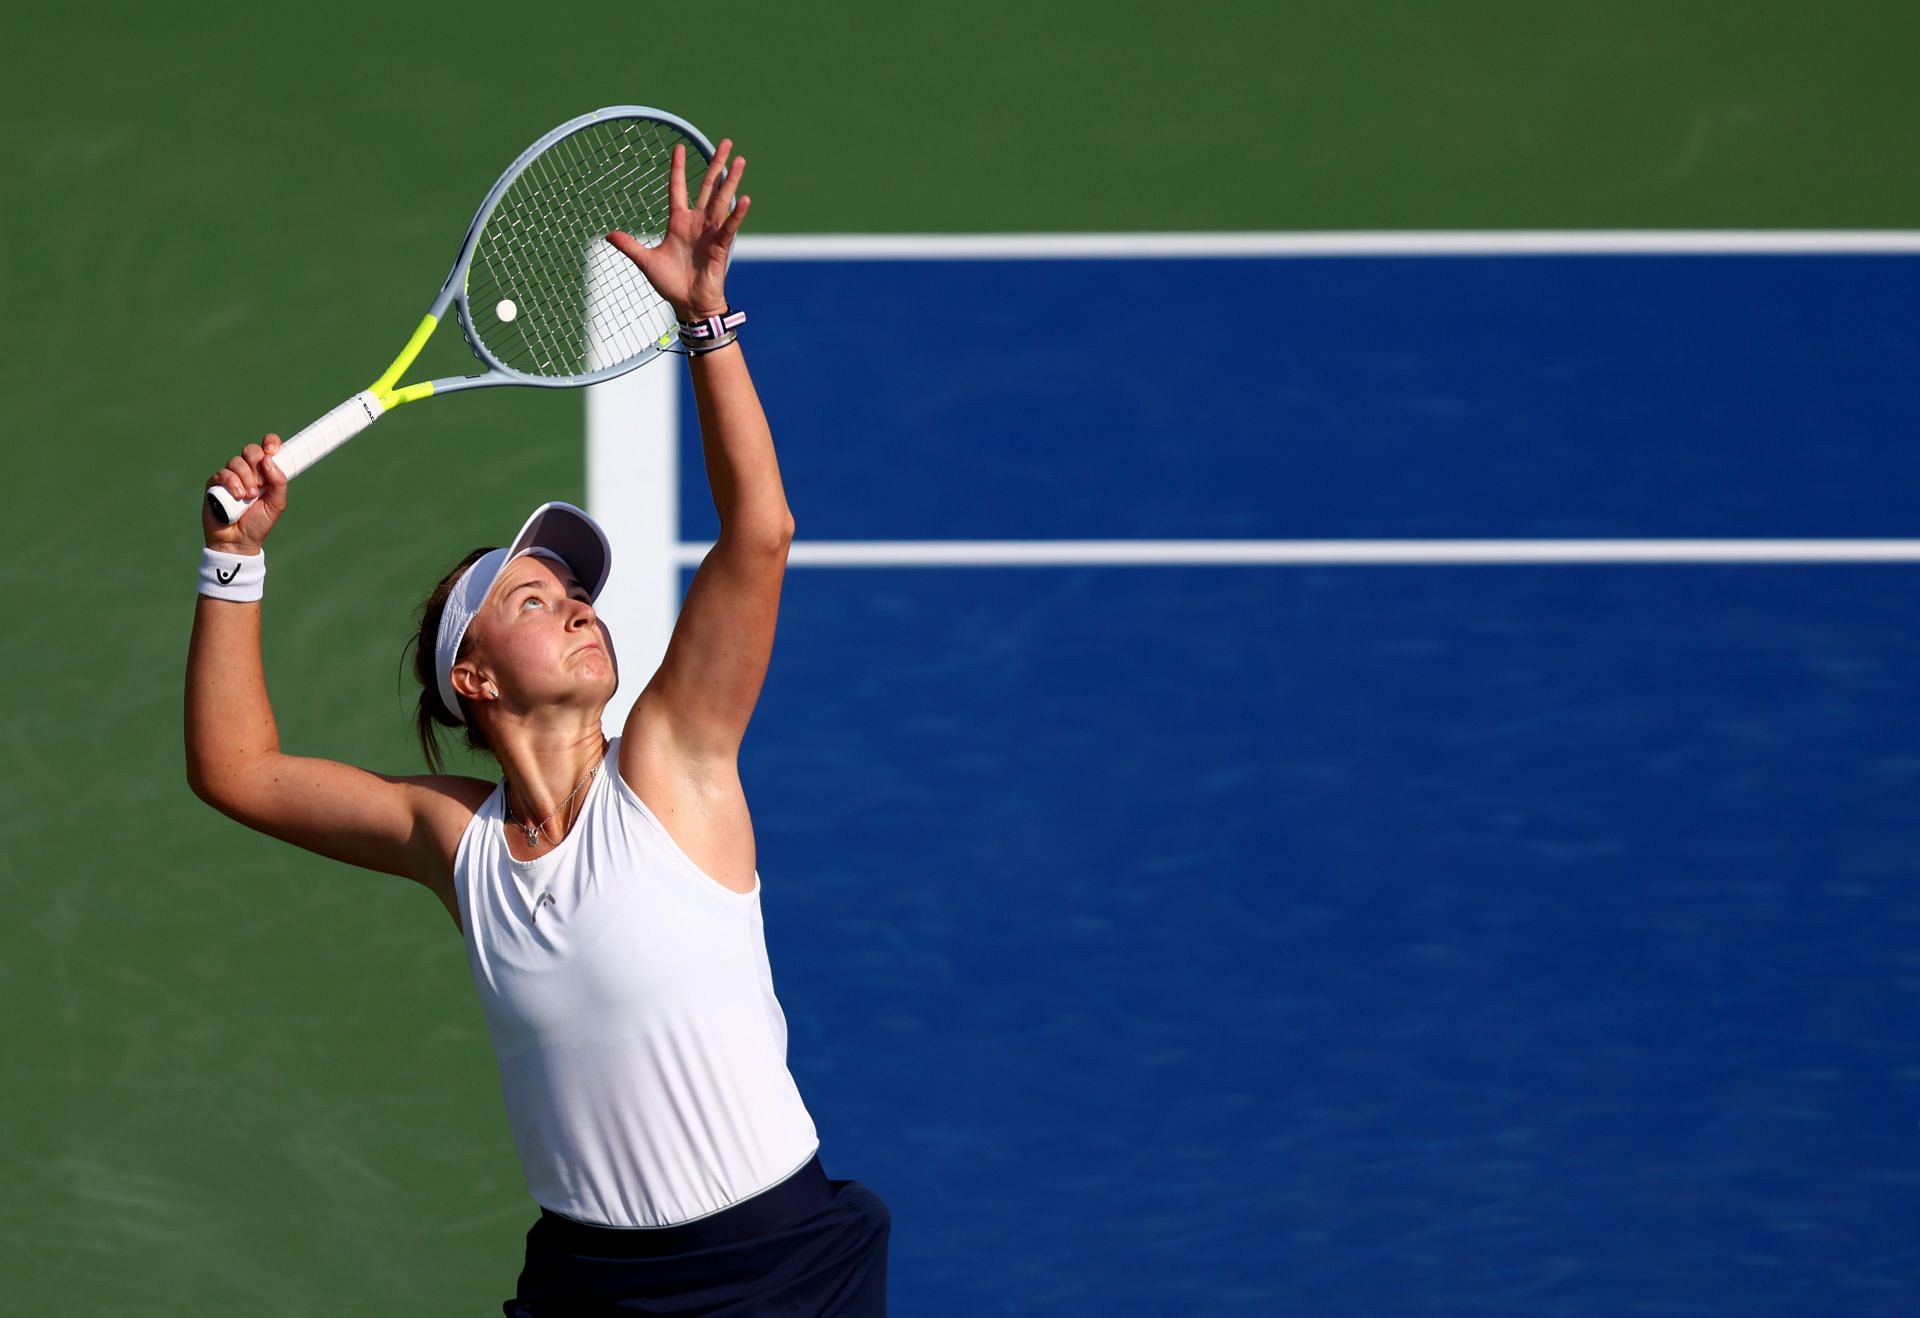 Barbora Krejcikova serves during her first-round match in Dubai